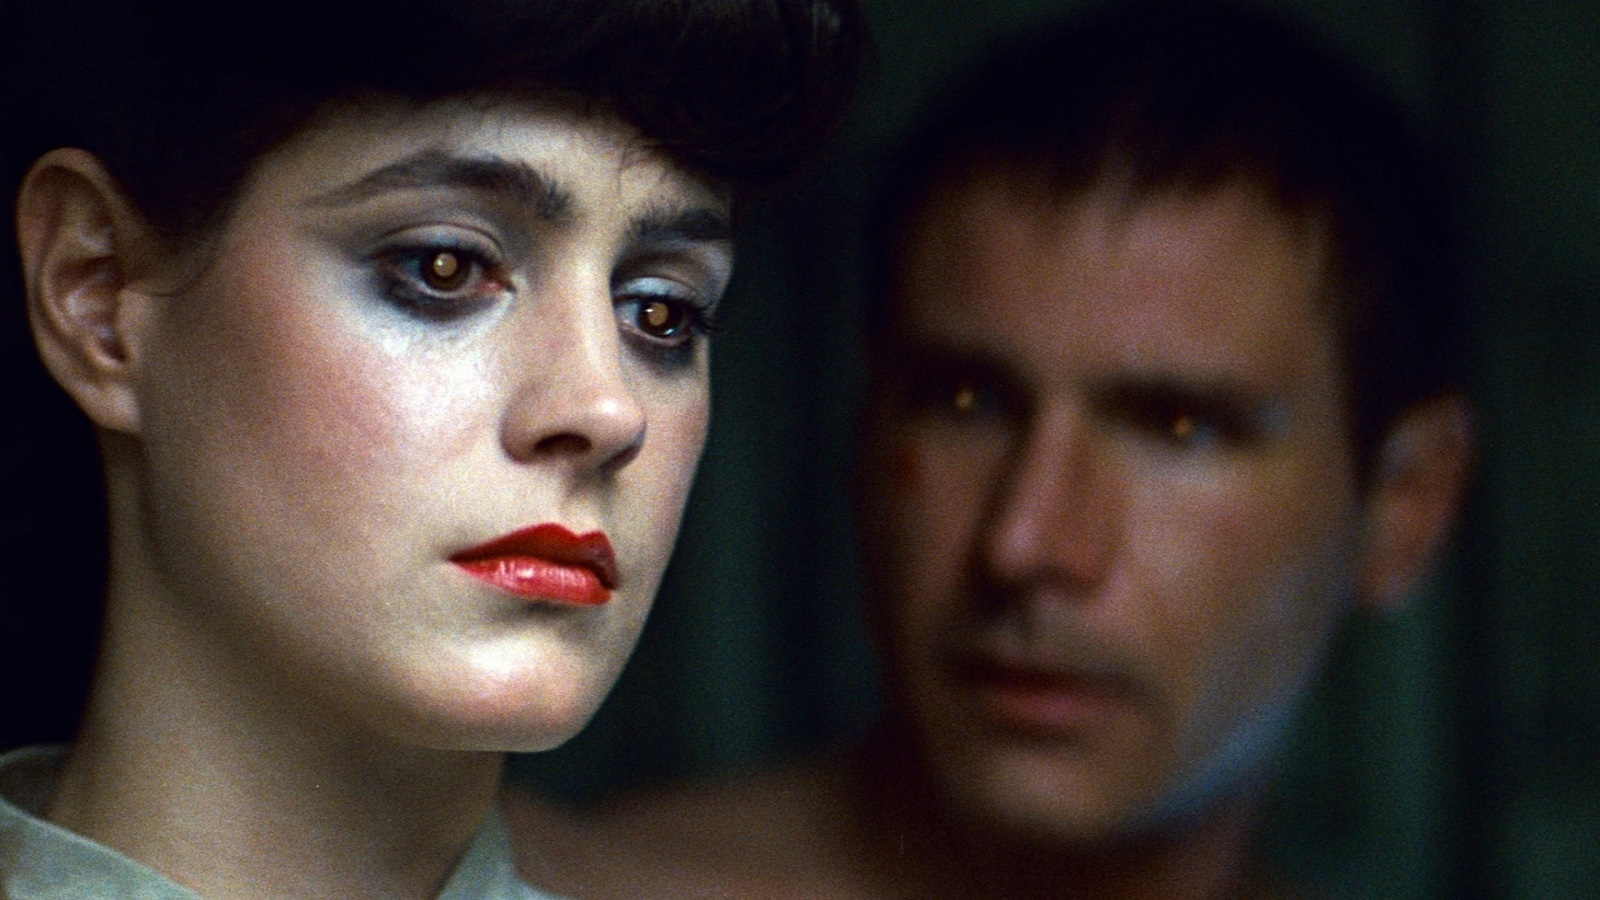 Релиз переиздания Blade Runner отложили на неопределённый срок, но «результат скажет сам за себя»